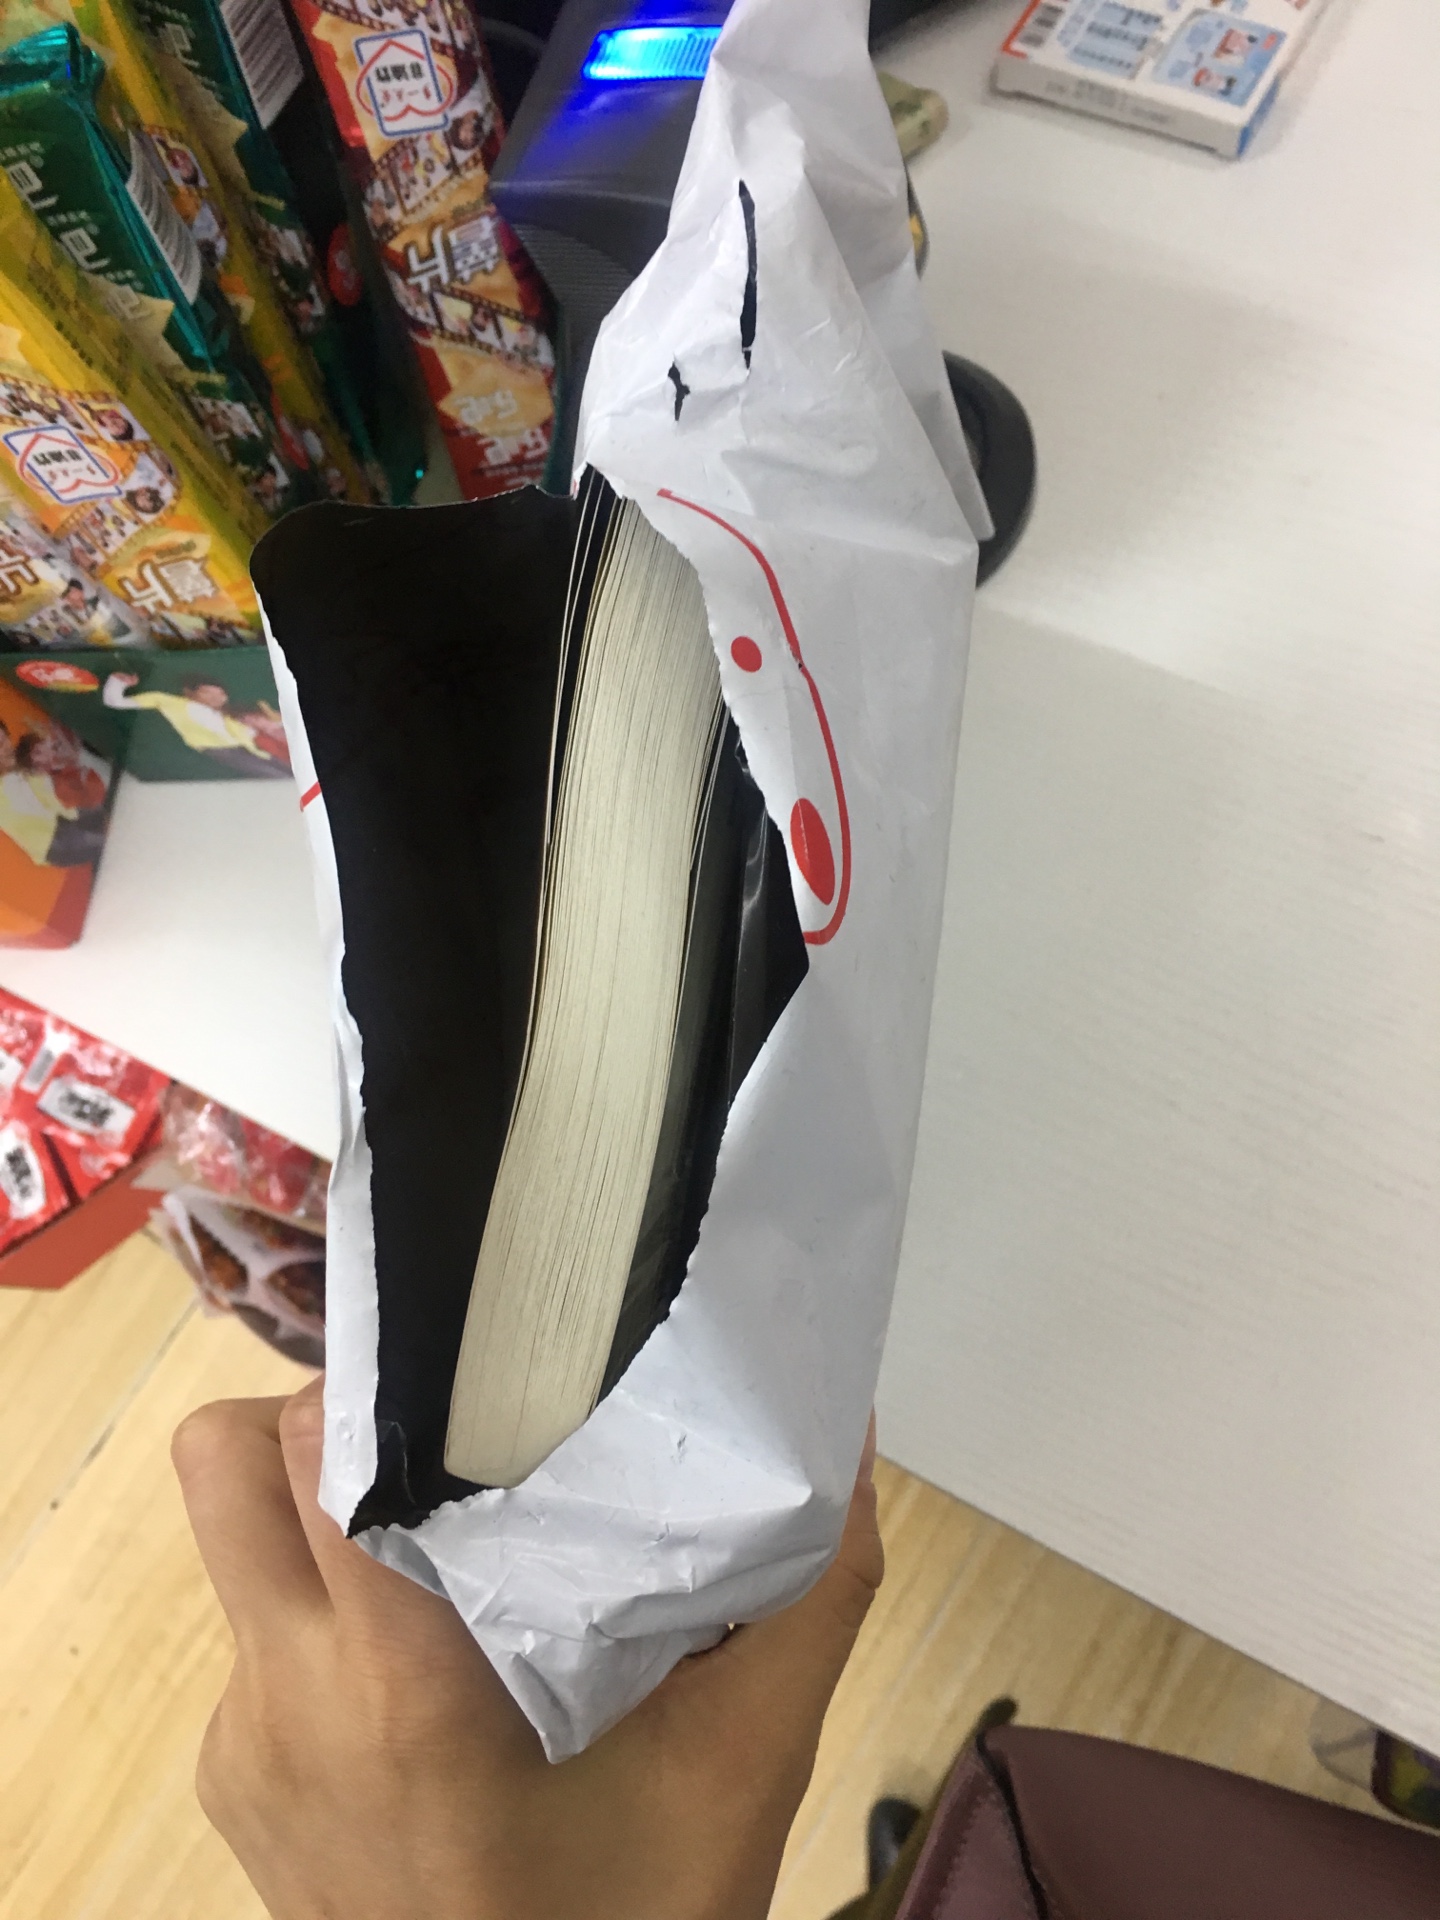 凑单买的书，还没拆开看。看版面和书的质量还可以。就是快递包装很恼火，外面的袋子已经破了，幸好书没有受影响。